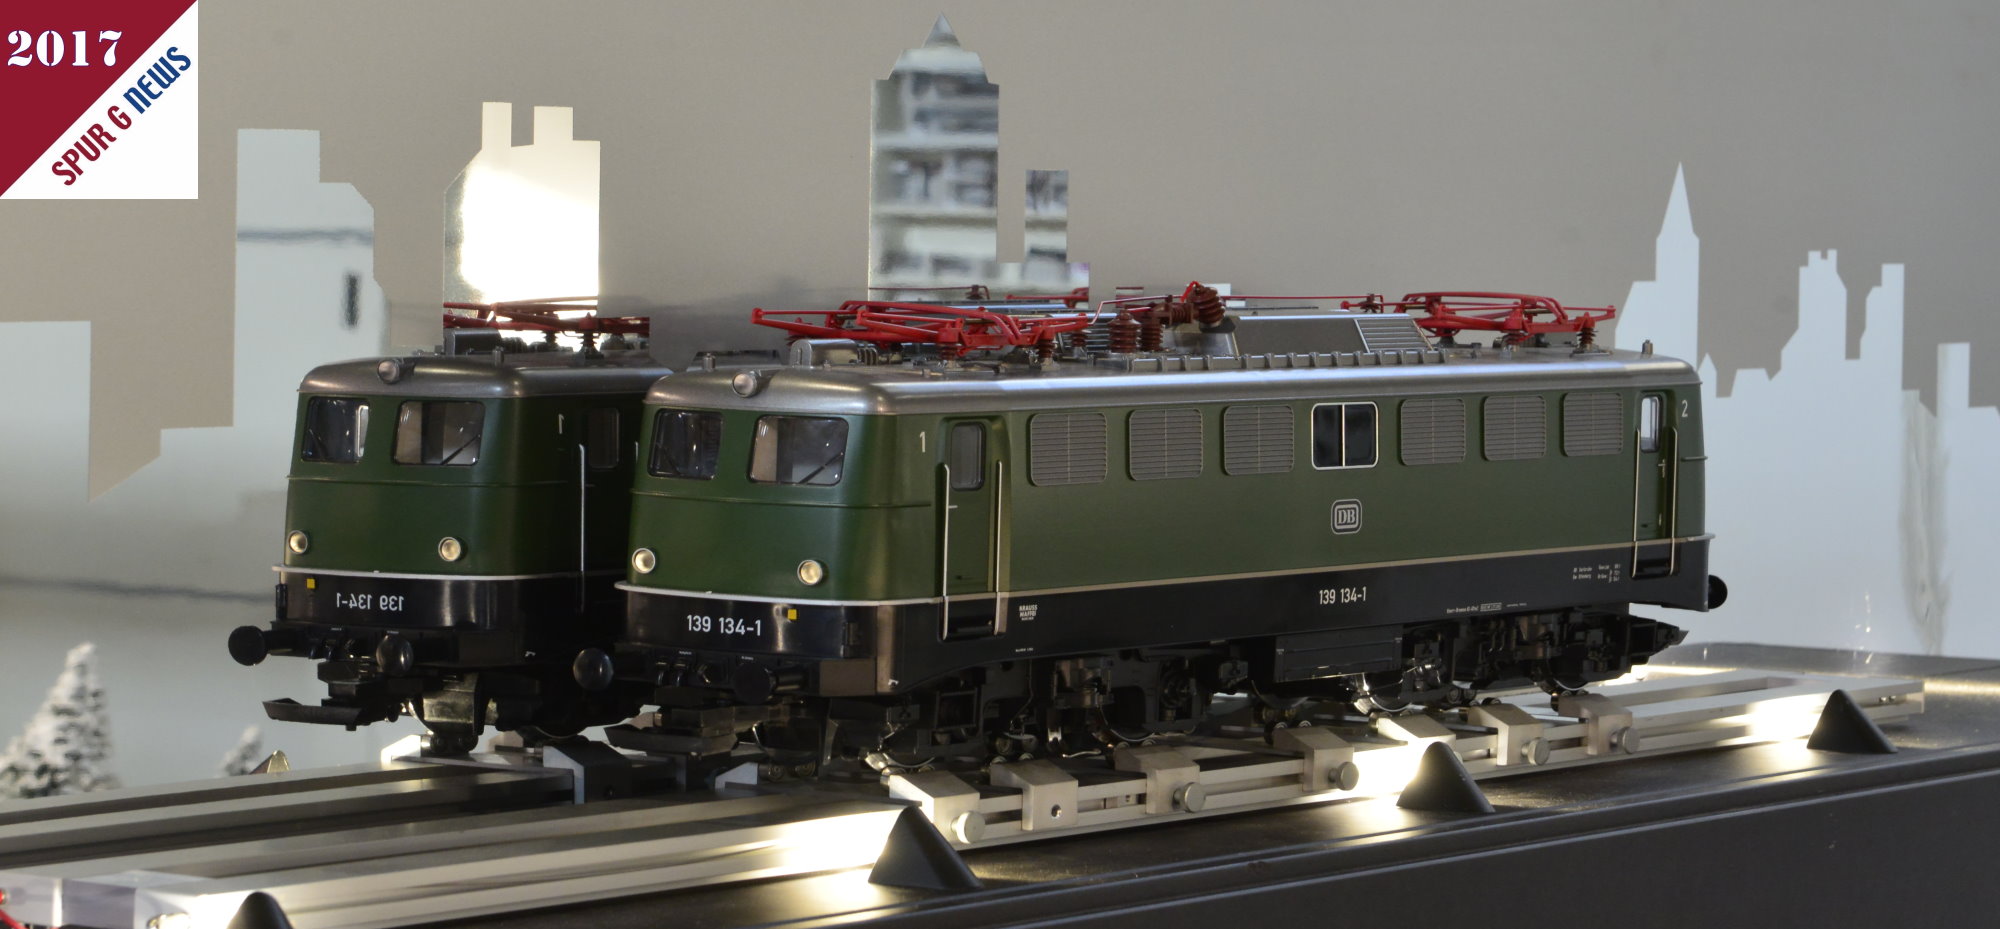 Bei LGB gibt es seit Jahren nicht nur die Schmalspurbahnen im Modell sondern auch Regelspurlokomotiven. Hier ist die BR 139 auf der Leipziger Messe zu sehen. 